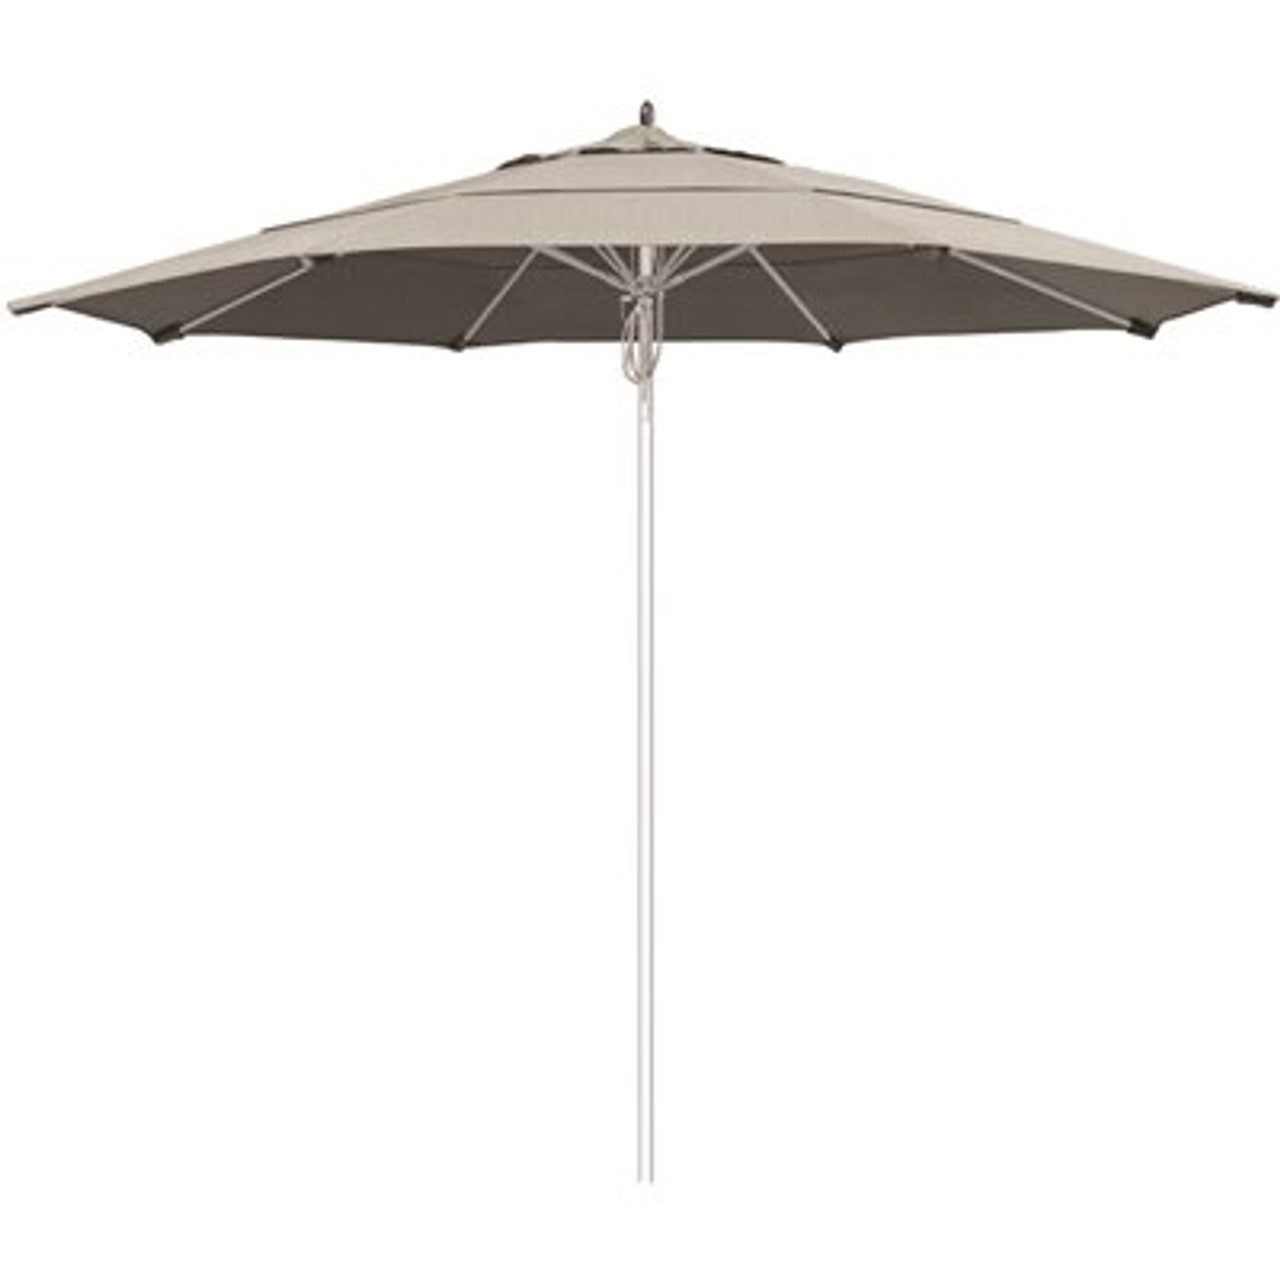 11 ft. Silver Aluminum Commercial Market Patio Umbrella Fiberglass Ribs and Pulley lift in Granite Sunbrella